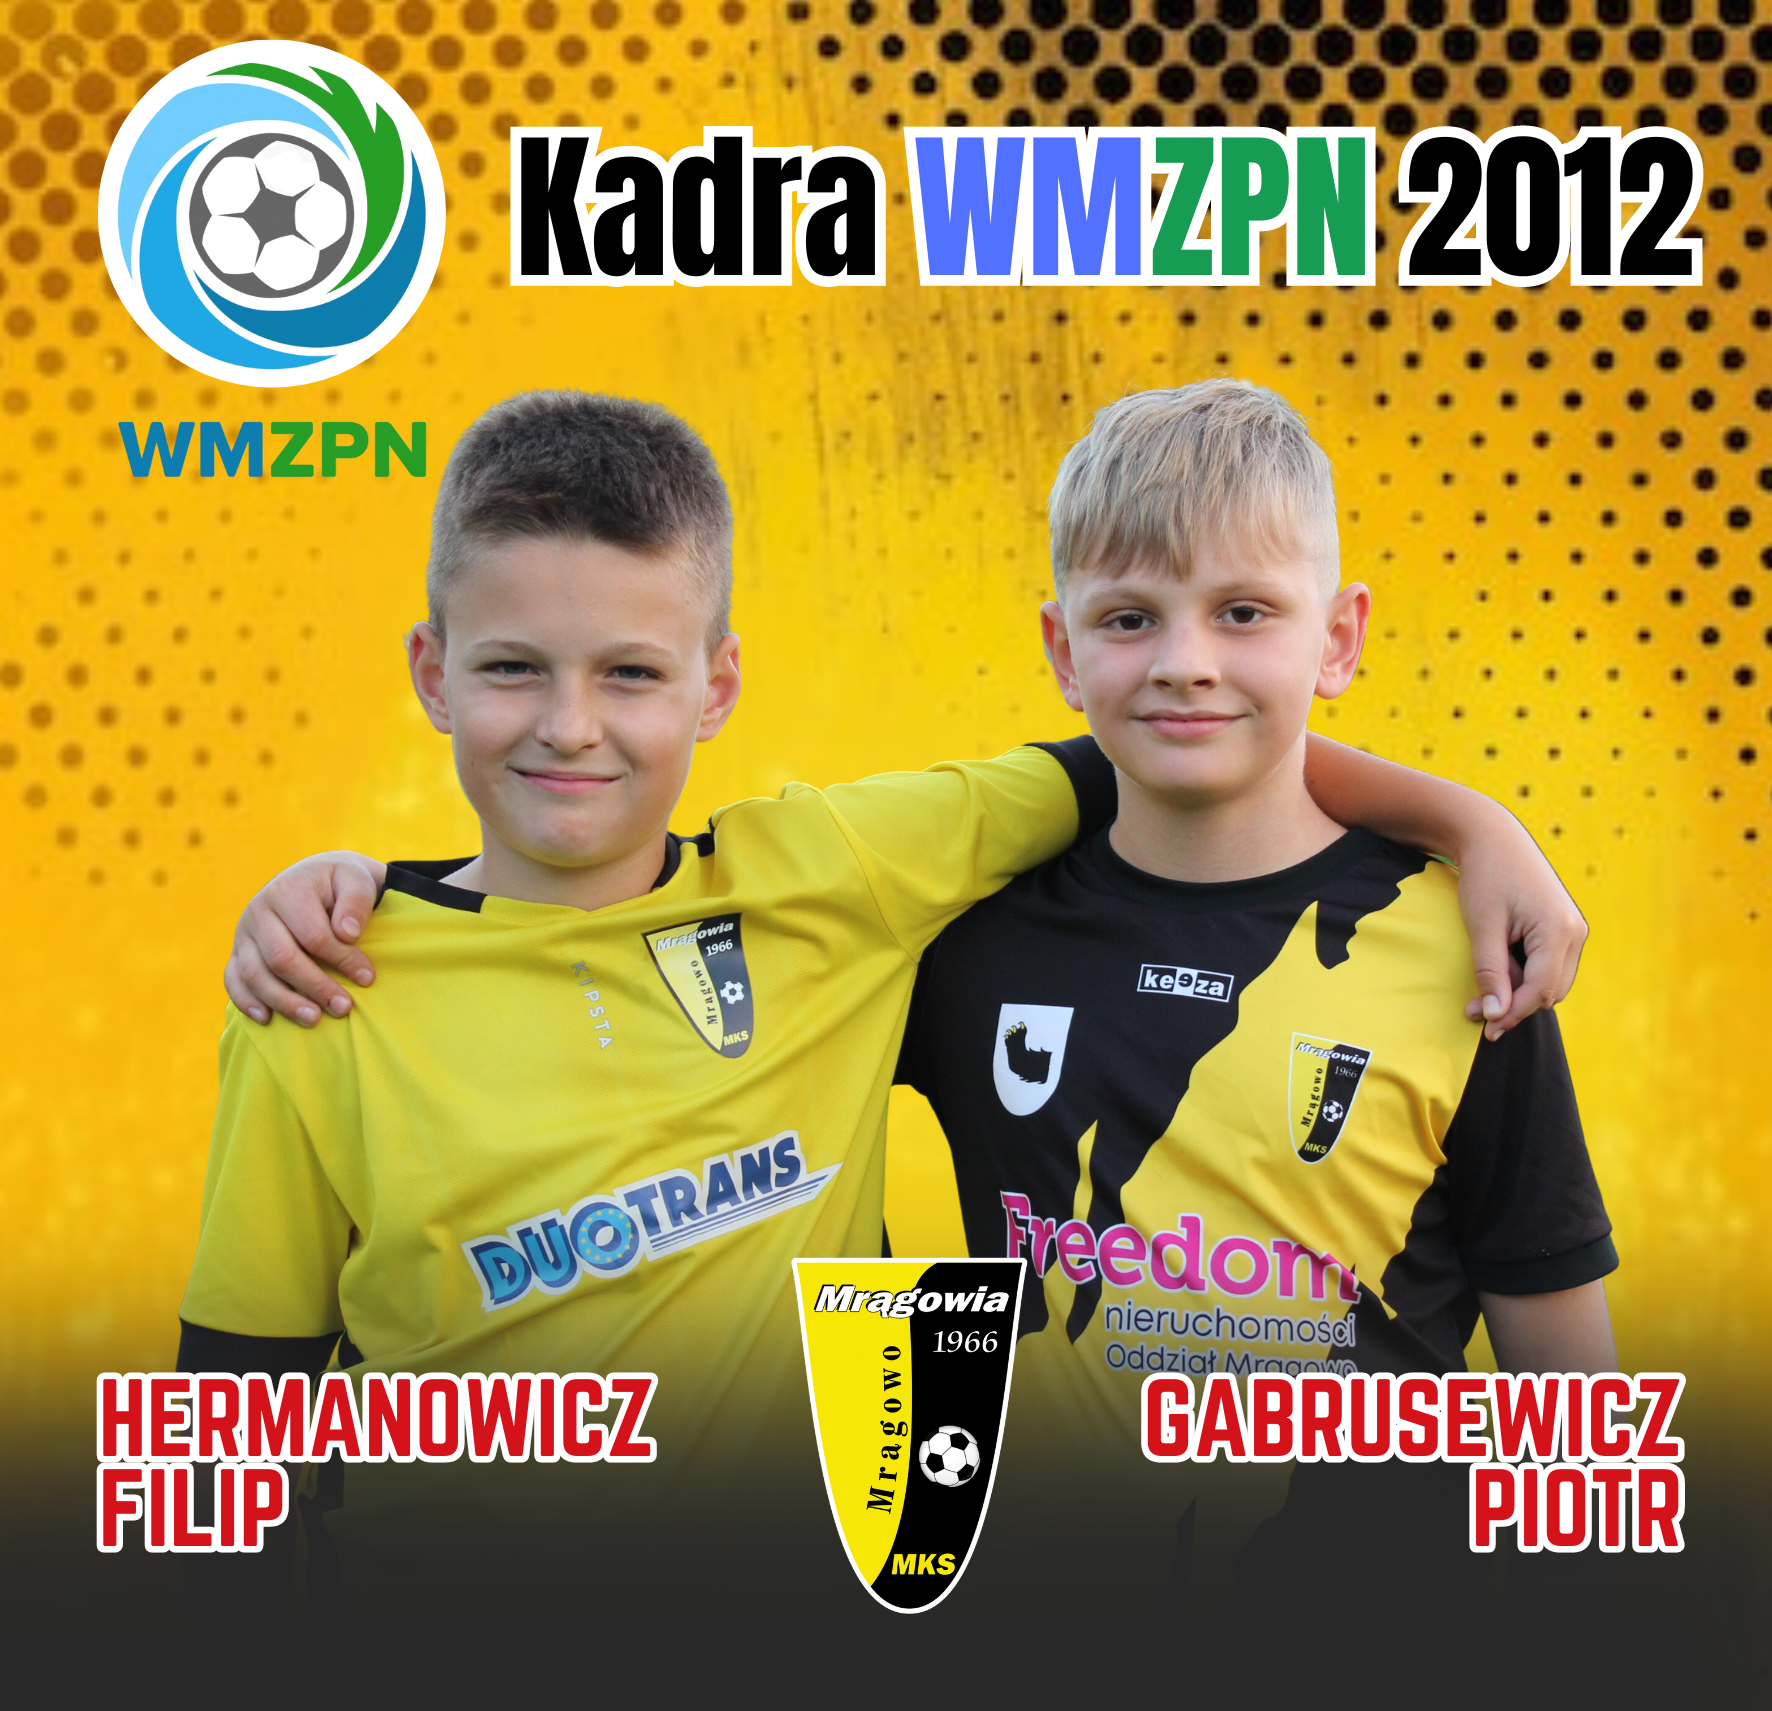 Filip Hermanowicz i Piotr Gabrusewicz w kadrze WMZPN 2012